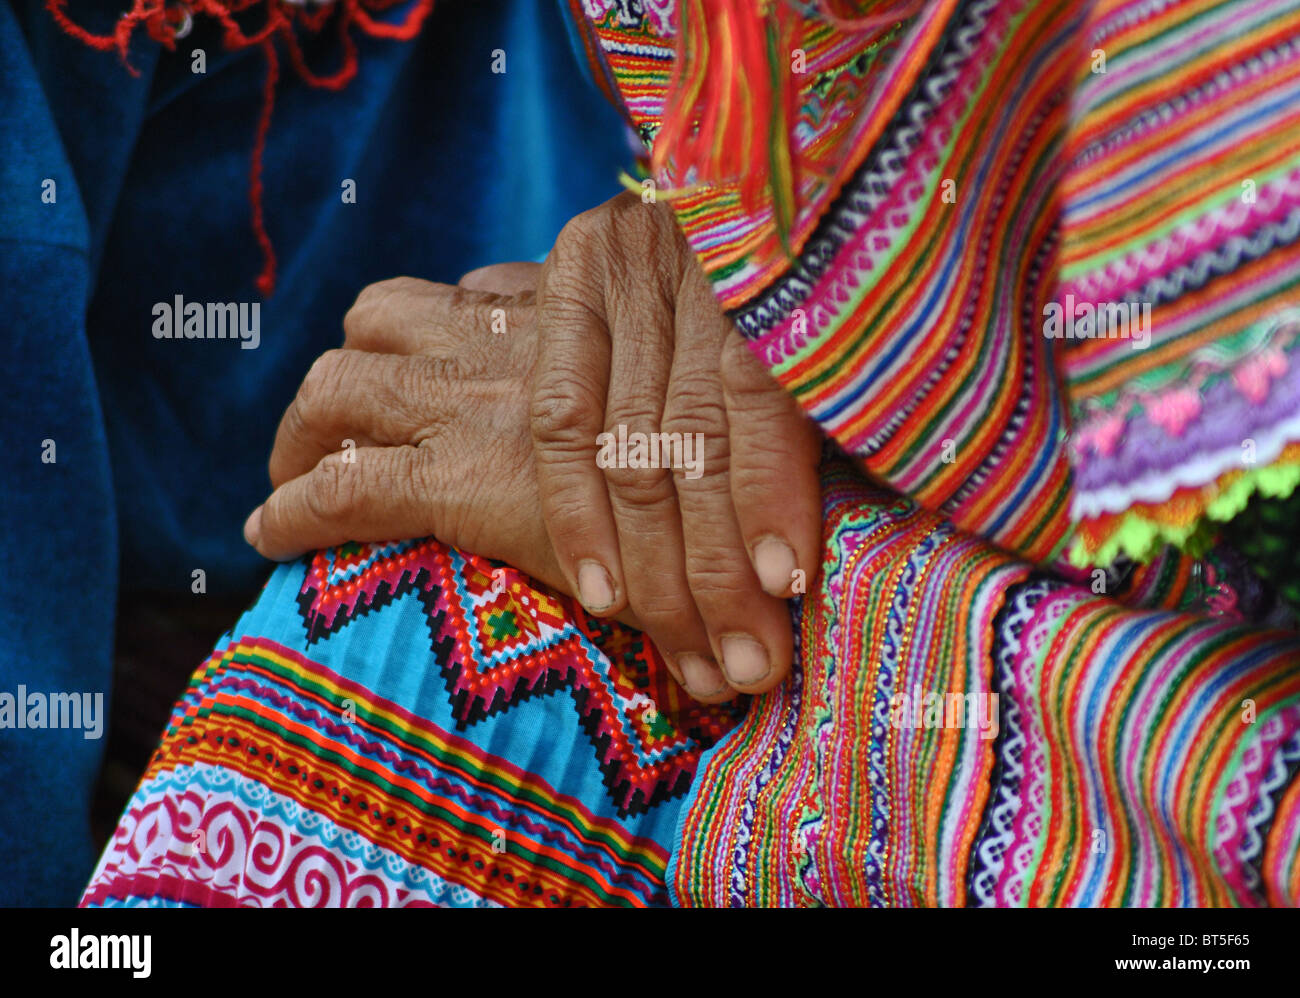 Detalle de manos de un anciano 'Flor Hmong" mujer tribal cerca de Sapa, Vietnam Foto de stock